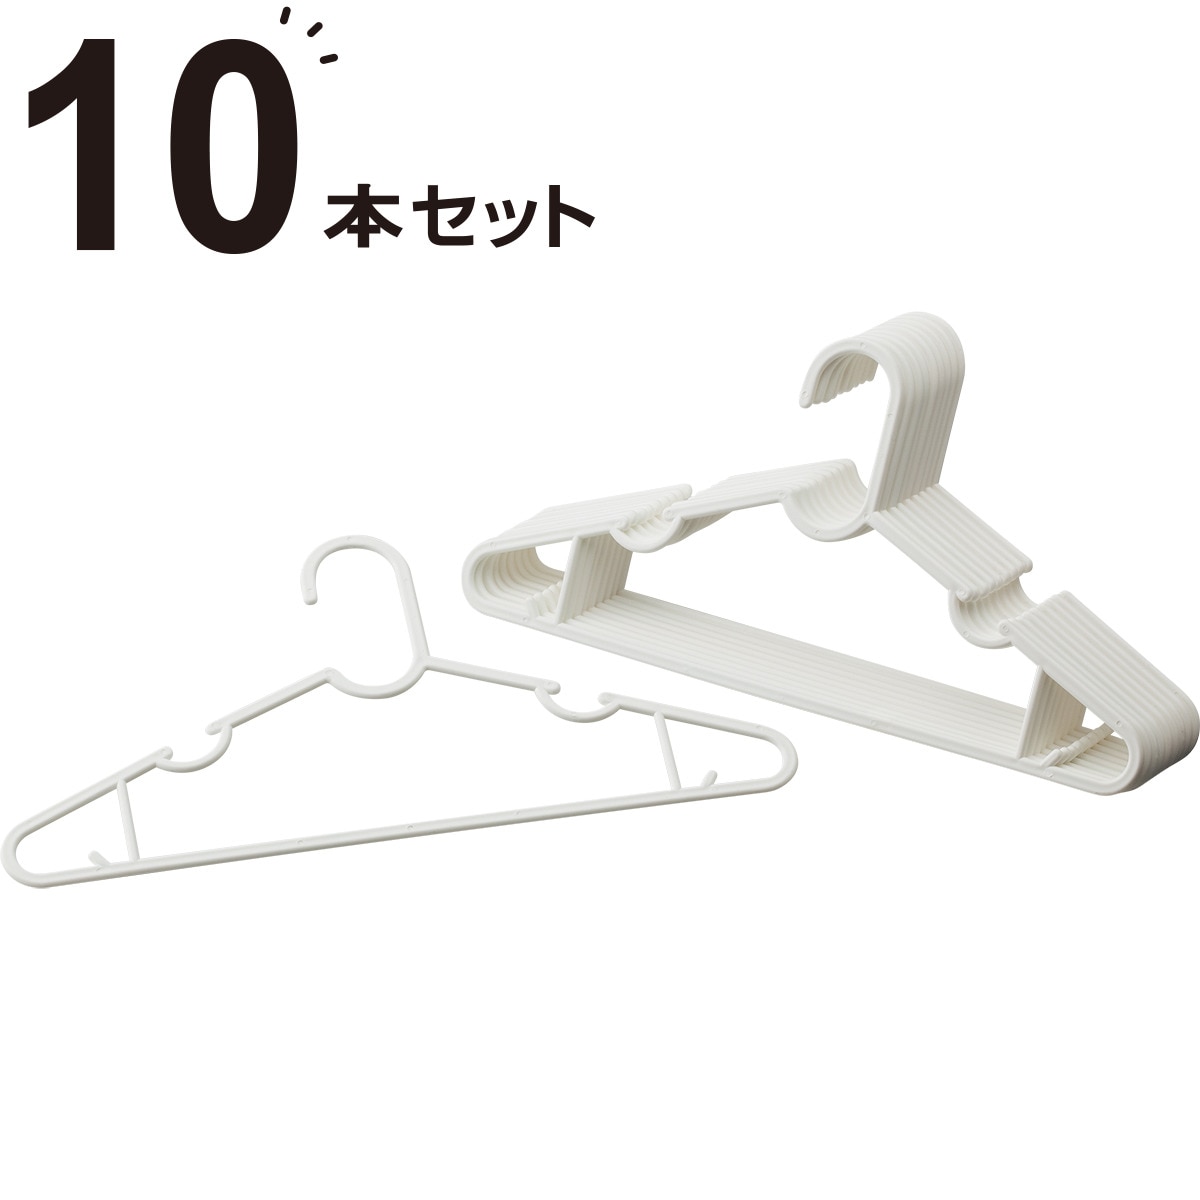 洗濯ワイシャツハンガー 10本組(10P NW)